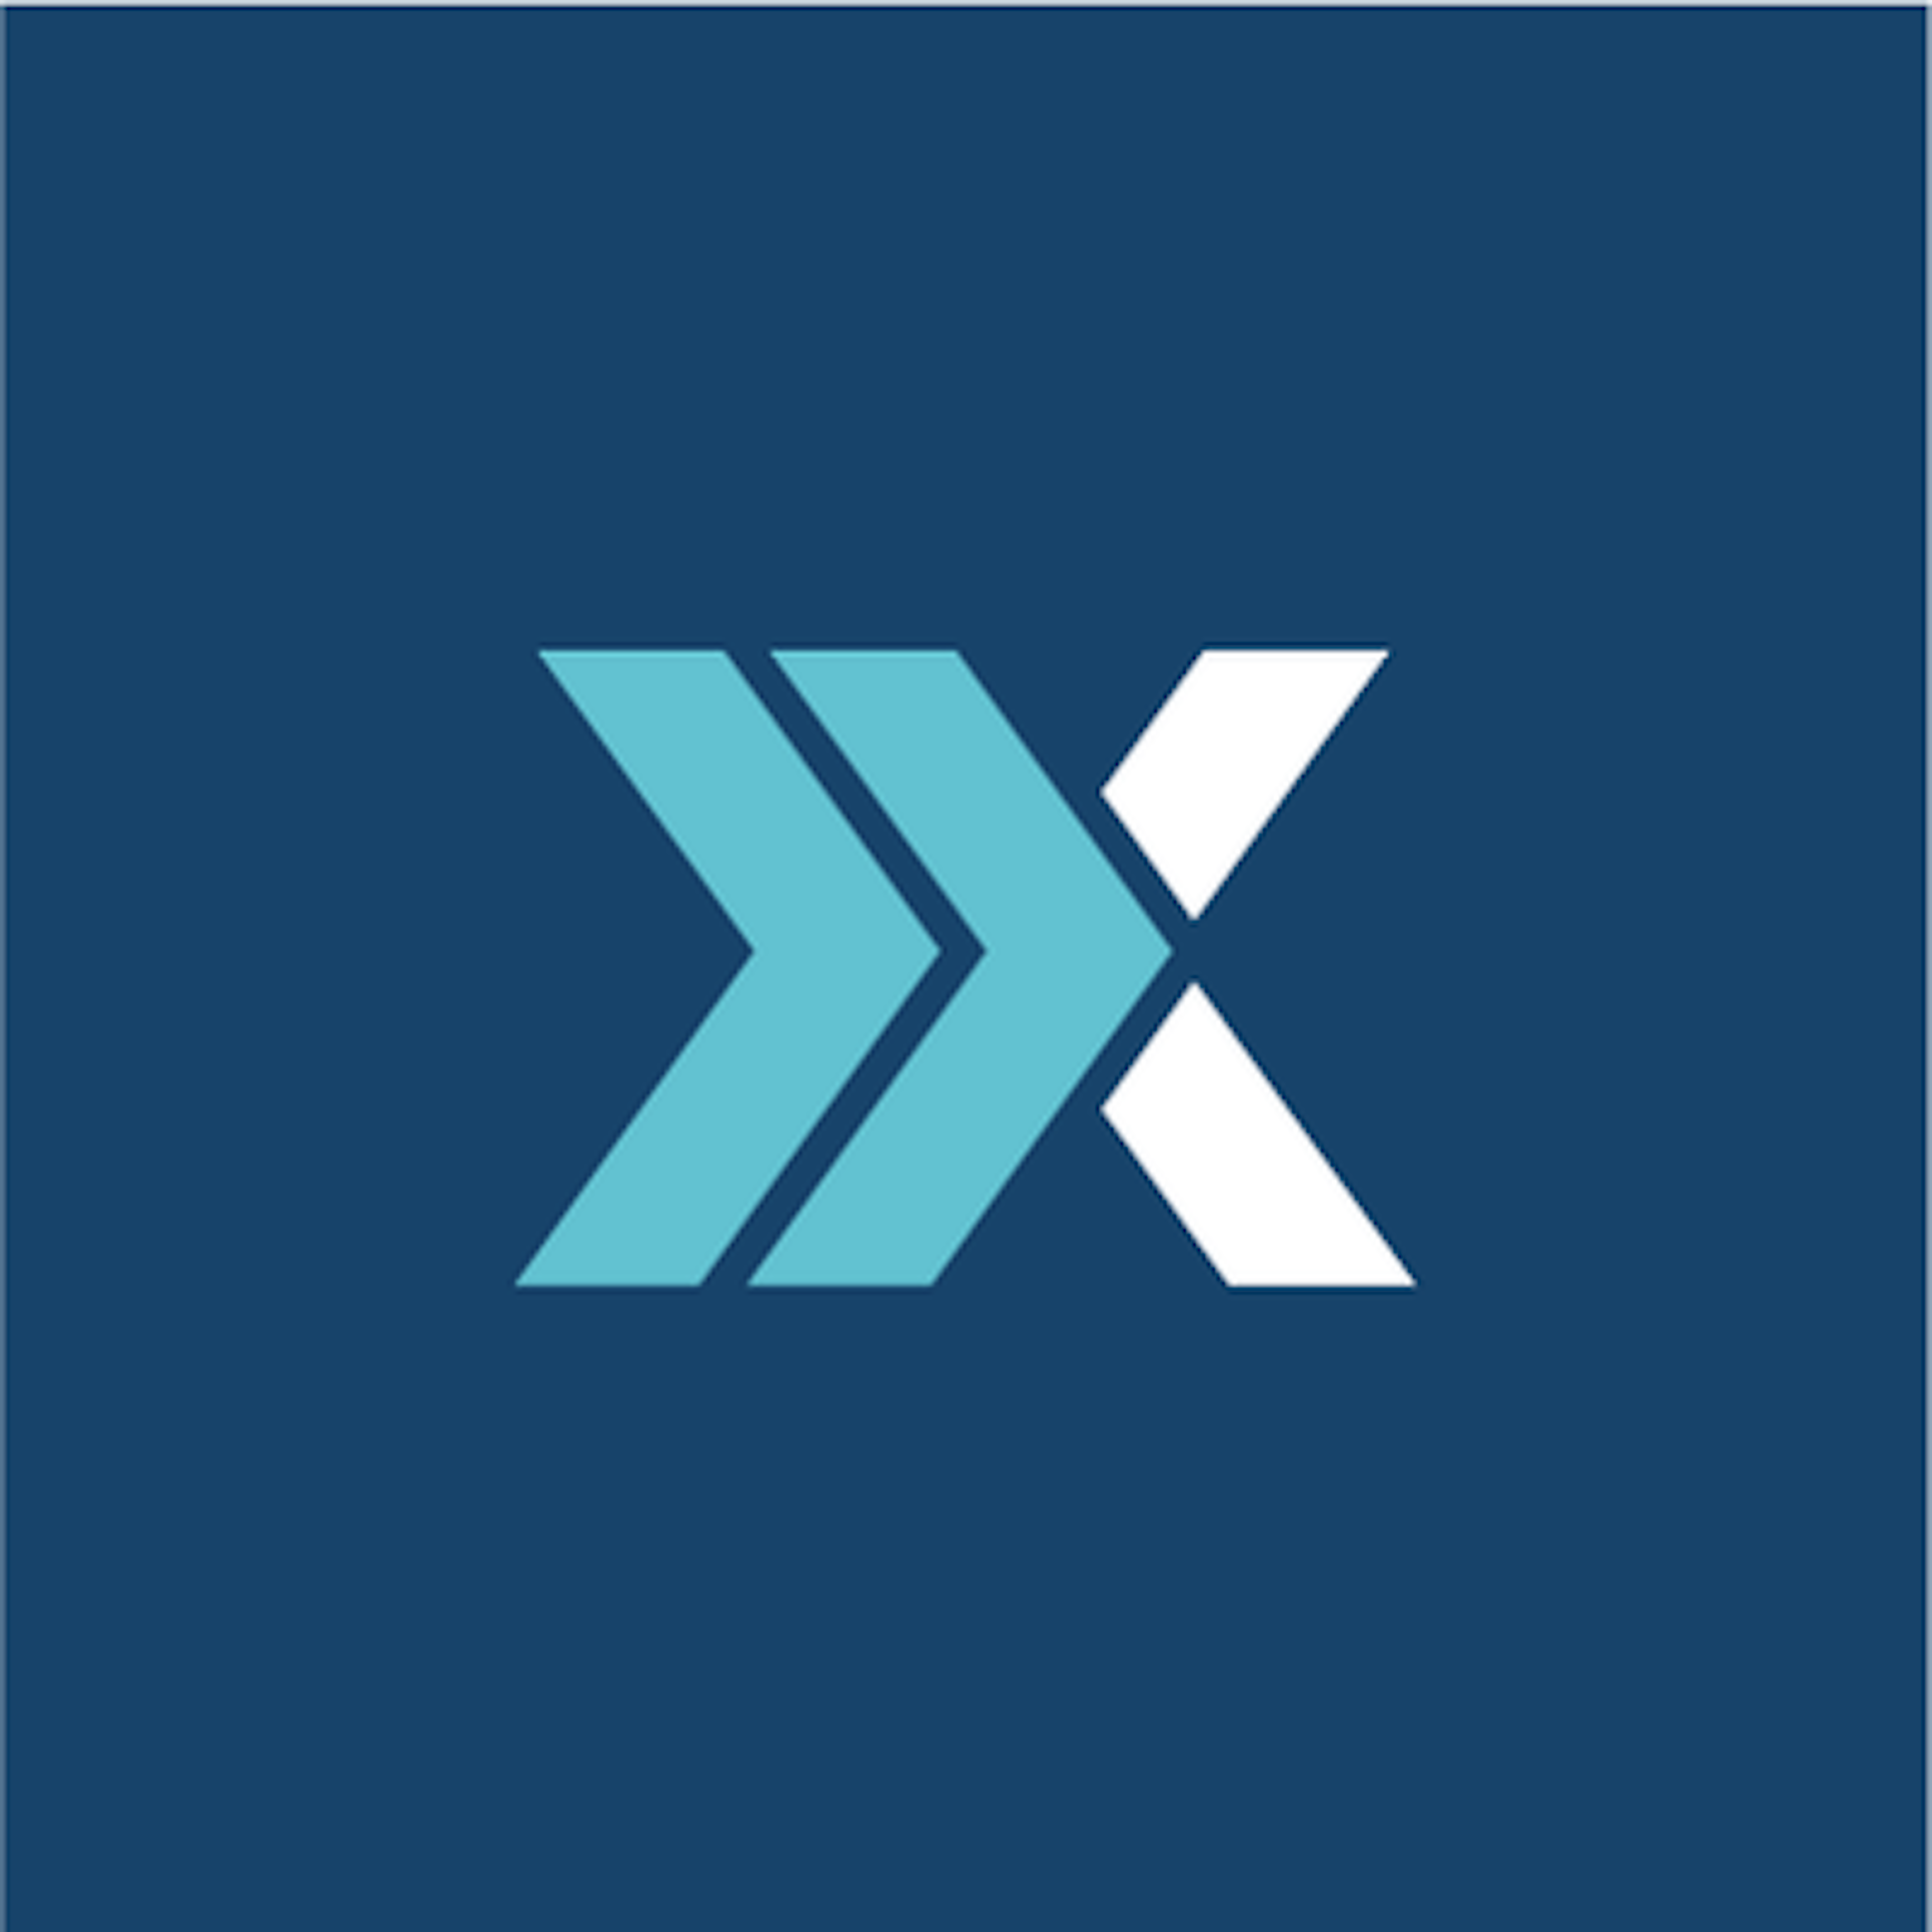 NextAgency Logo